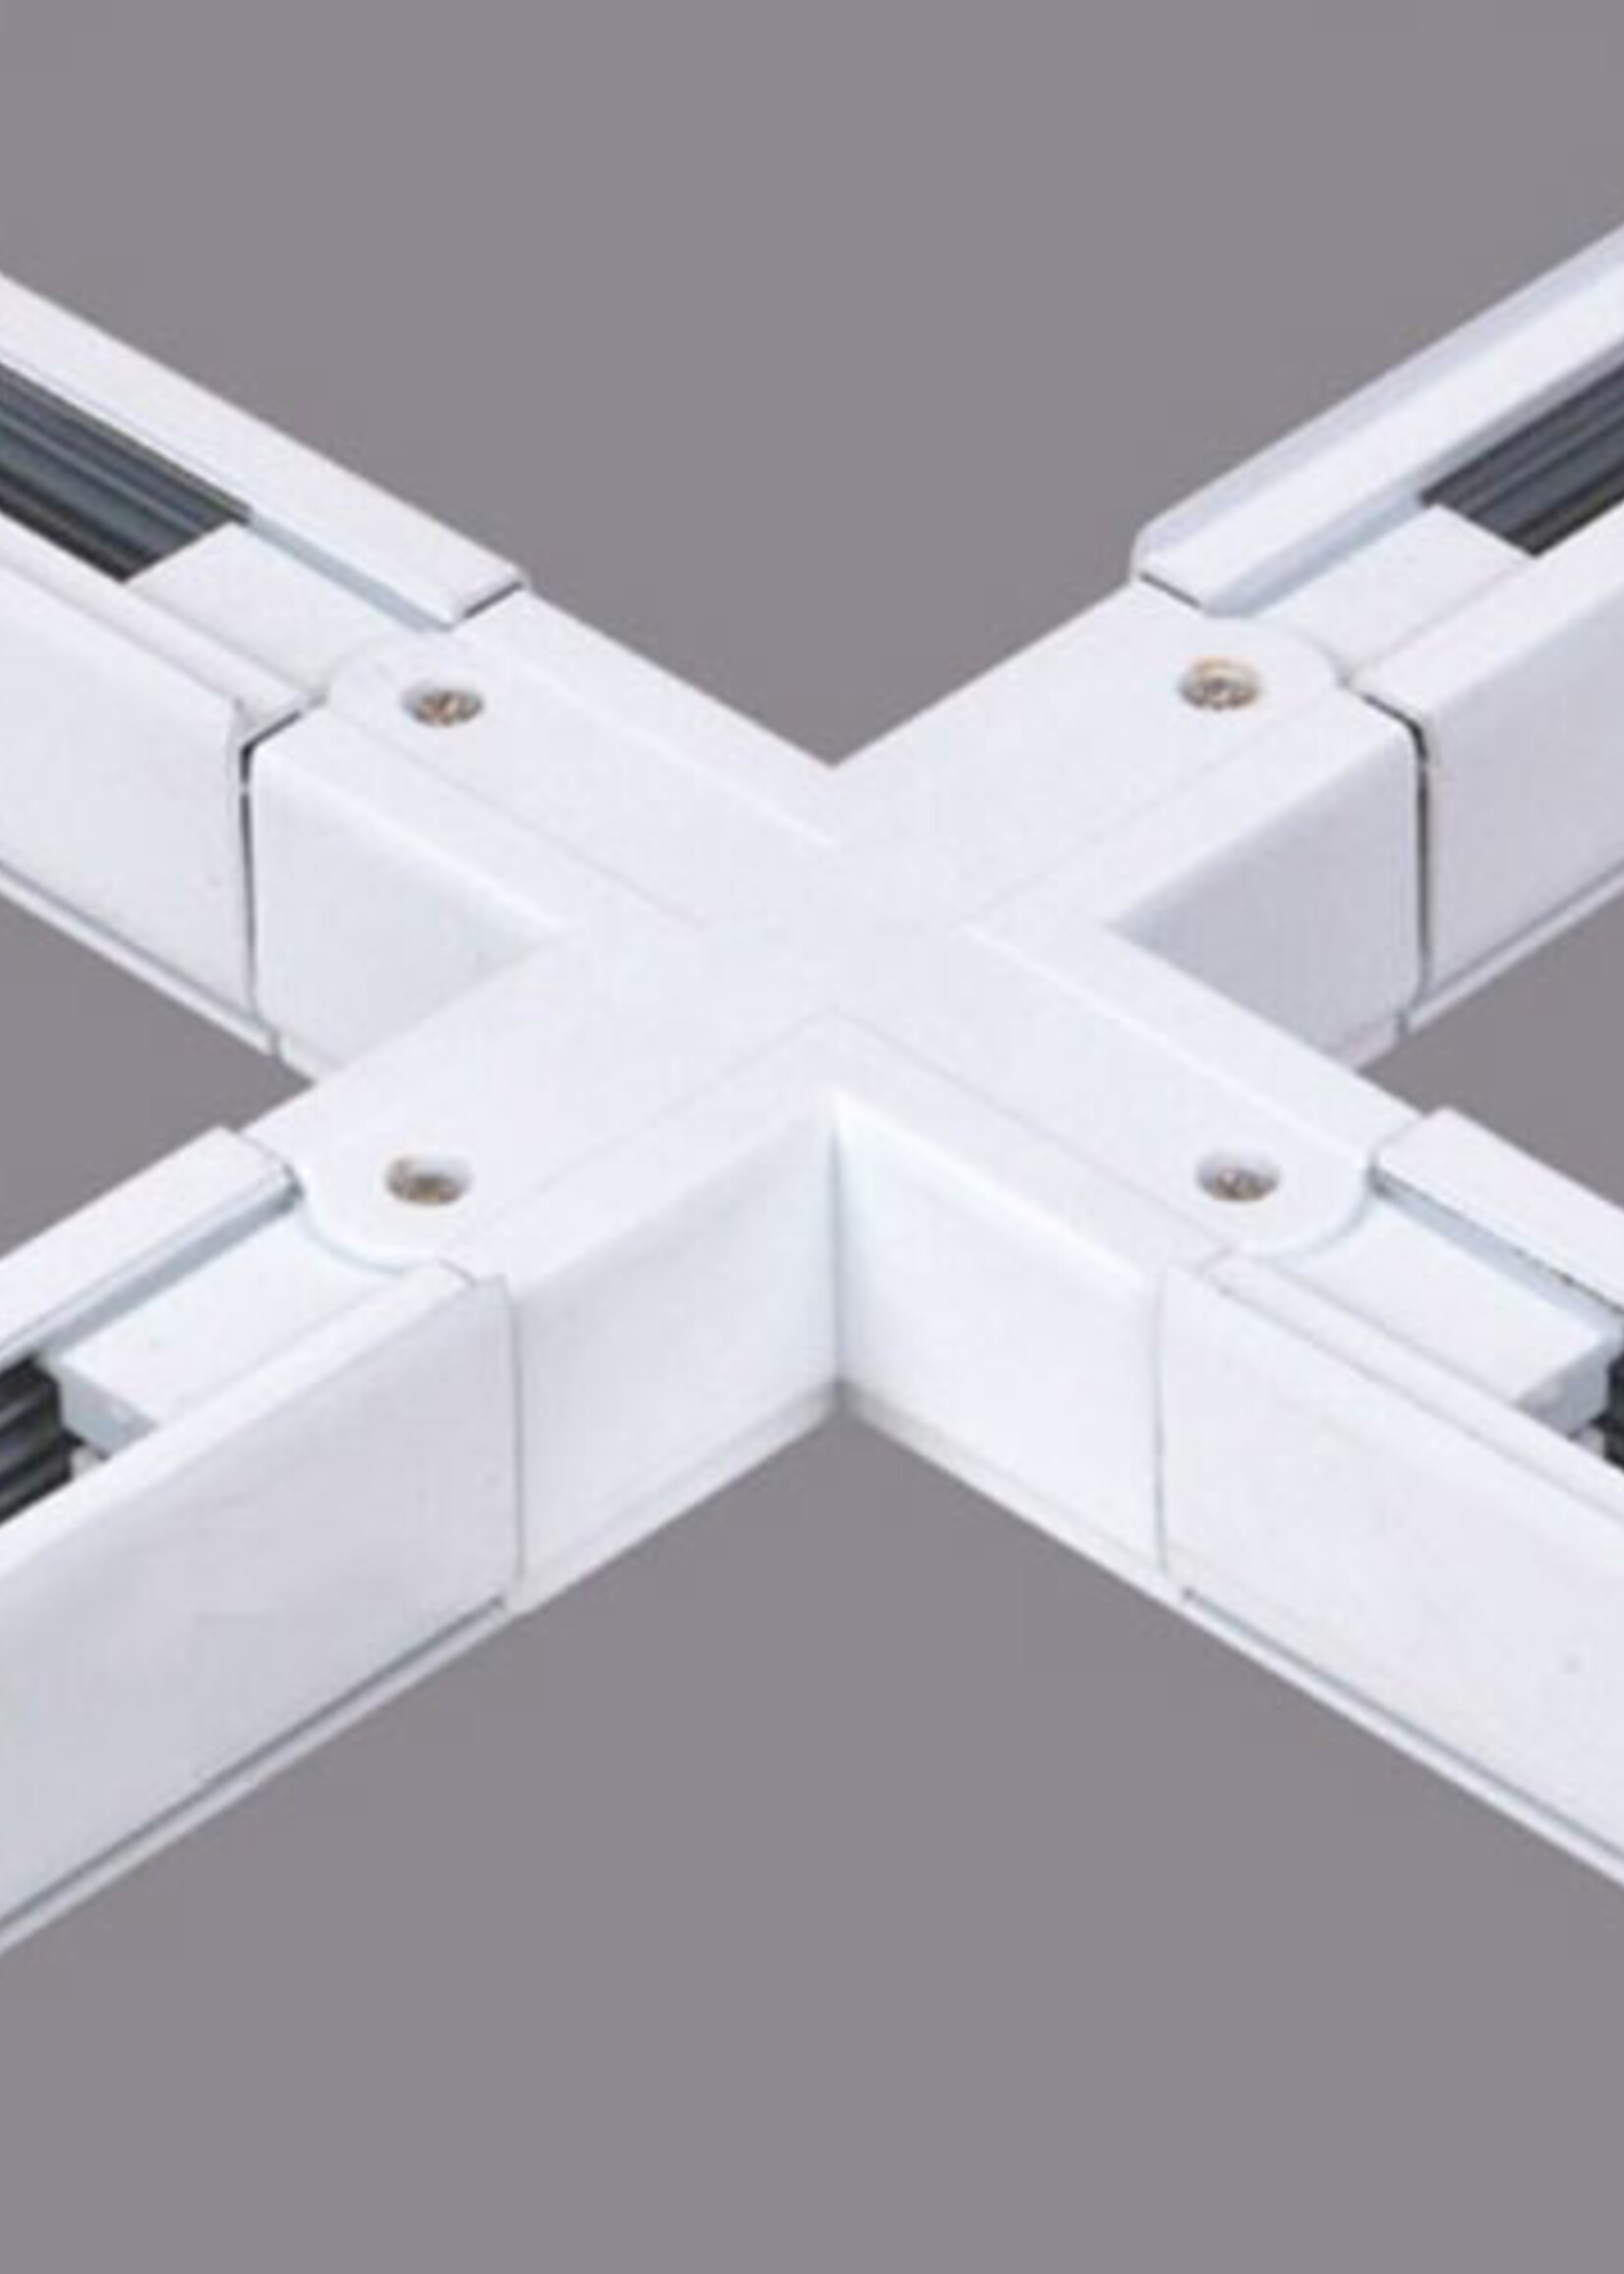 LEDWINKEL-Online LED Track Rail system cross-over connector white